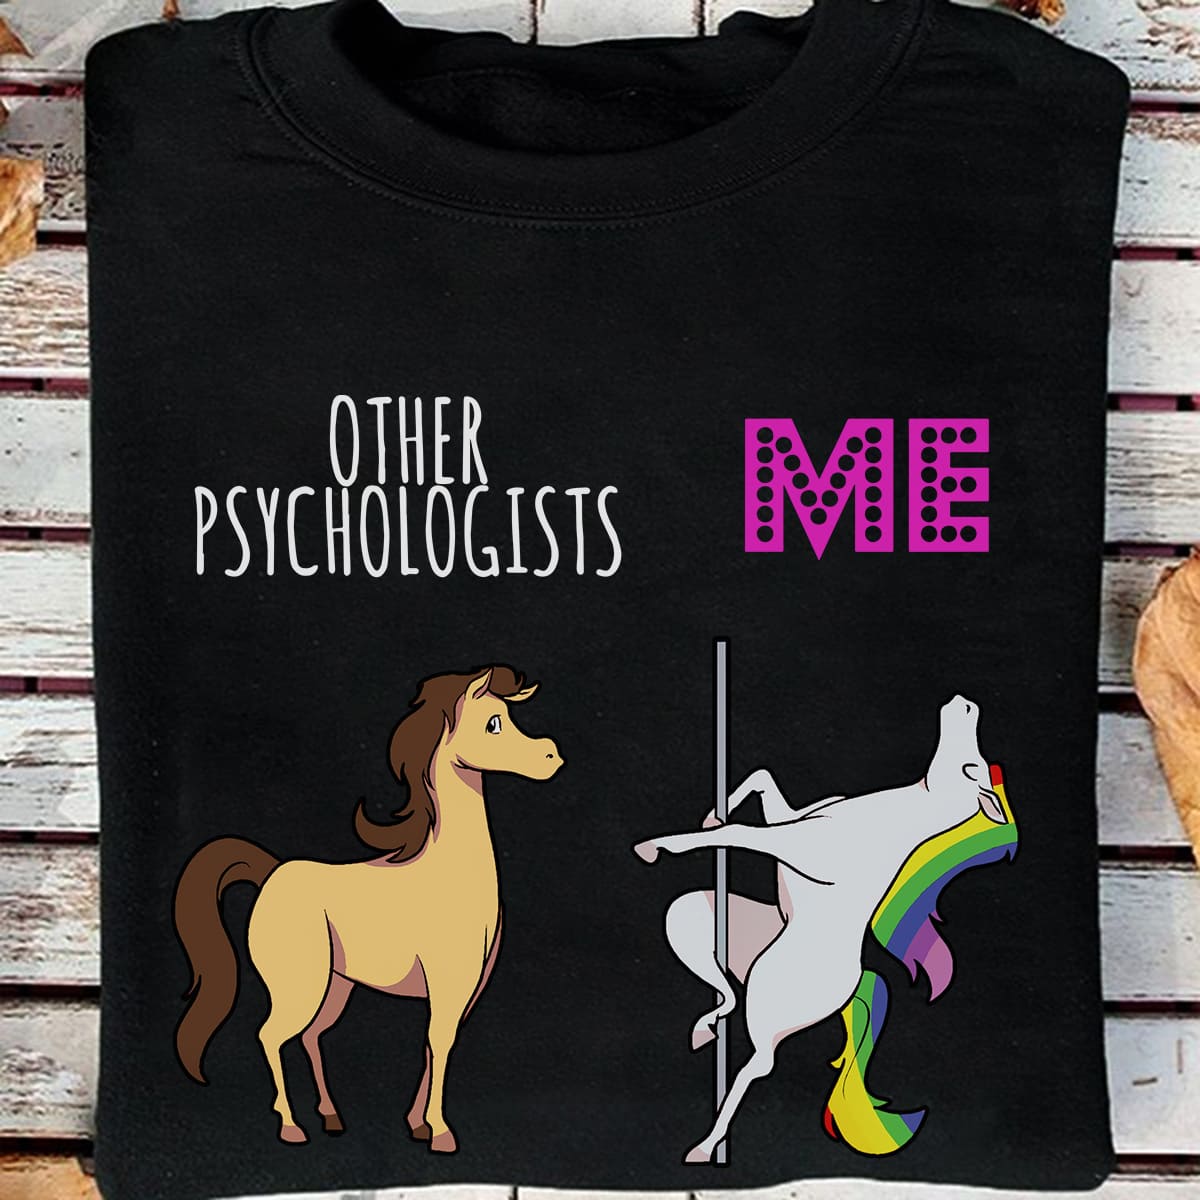 Other psychologitis - Pole dancing unicorn, unicorn and horse